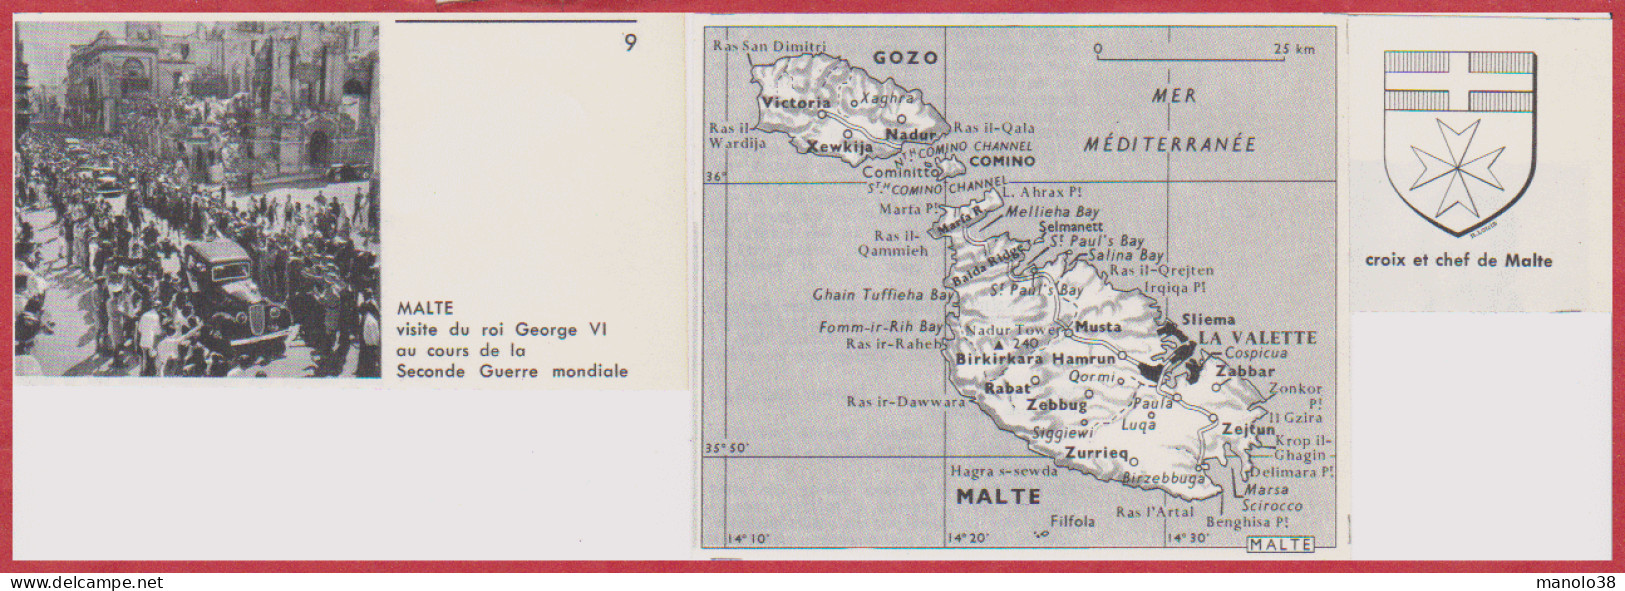 Malte. Visite Du Roi George VI Au Cours De La Seconde Guerre Mondiale. Carte Et Blason. Larousse 1960. - Historical Documents